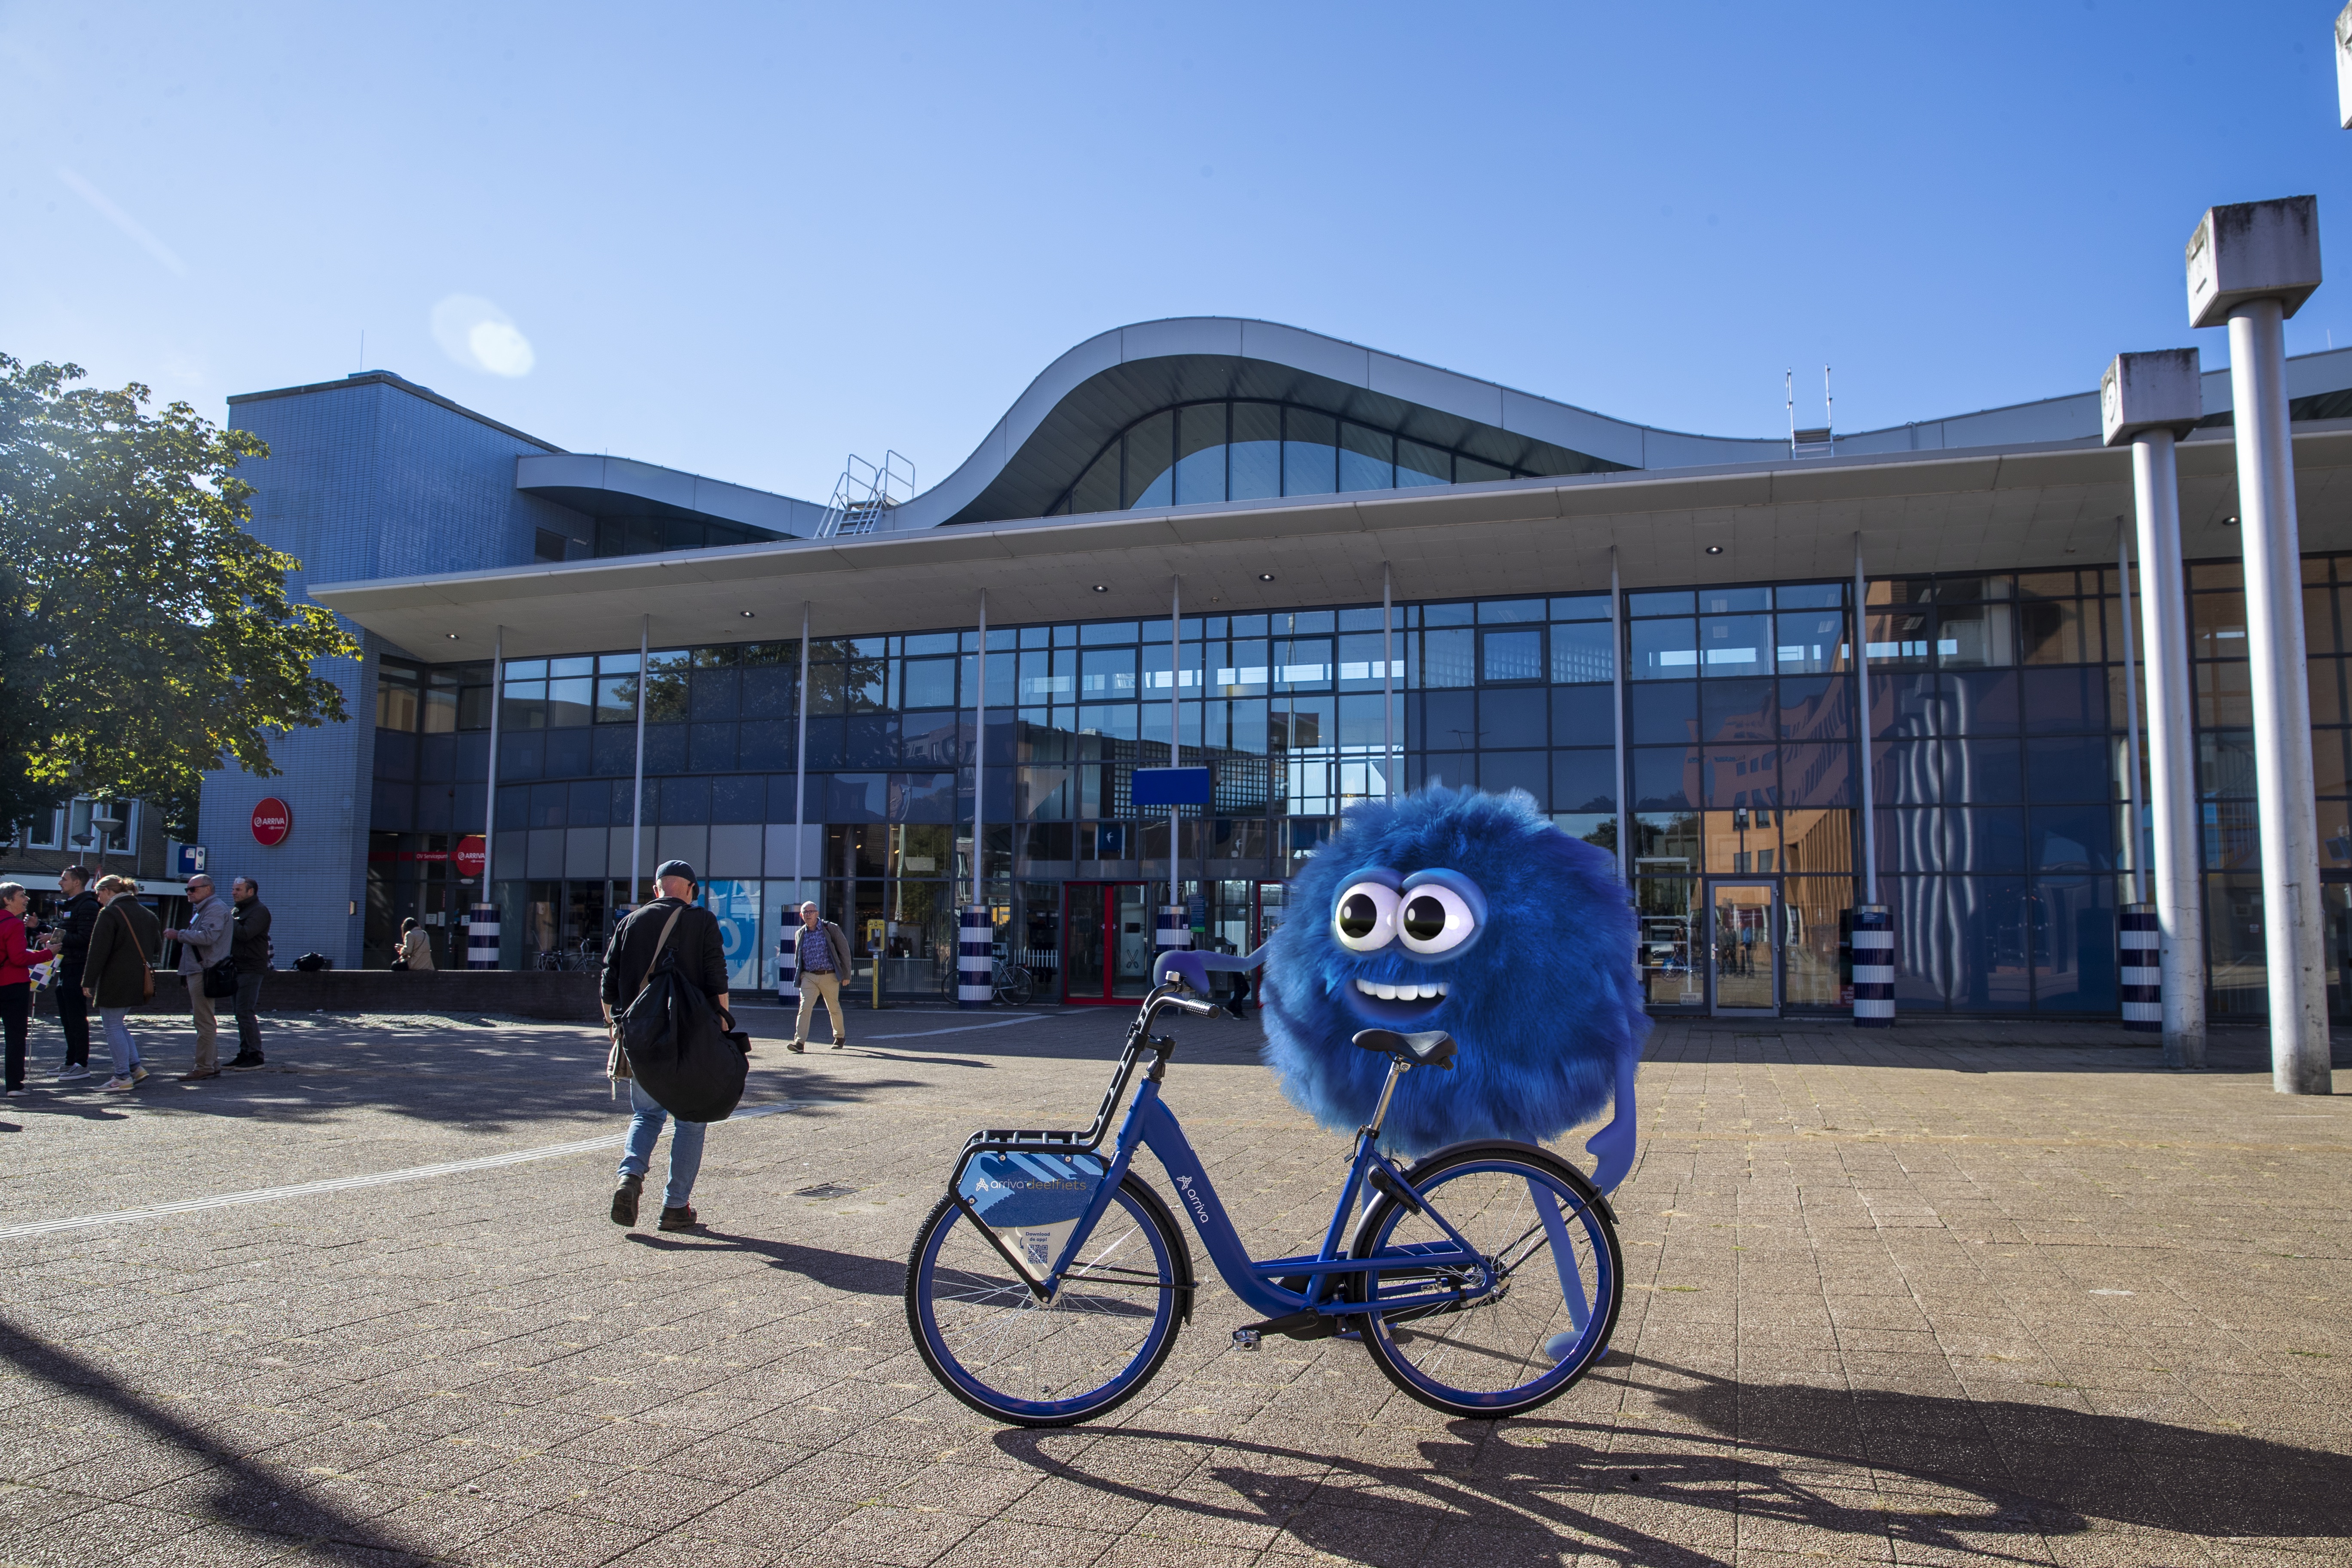 De mascotte van de Arriva-deelfiets, de blauwe fluffy Dirk, staat lachend met zo'n deelfiets voor station Sittard.